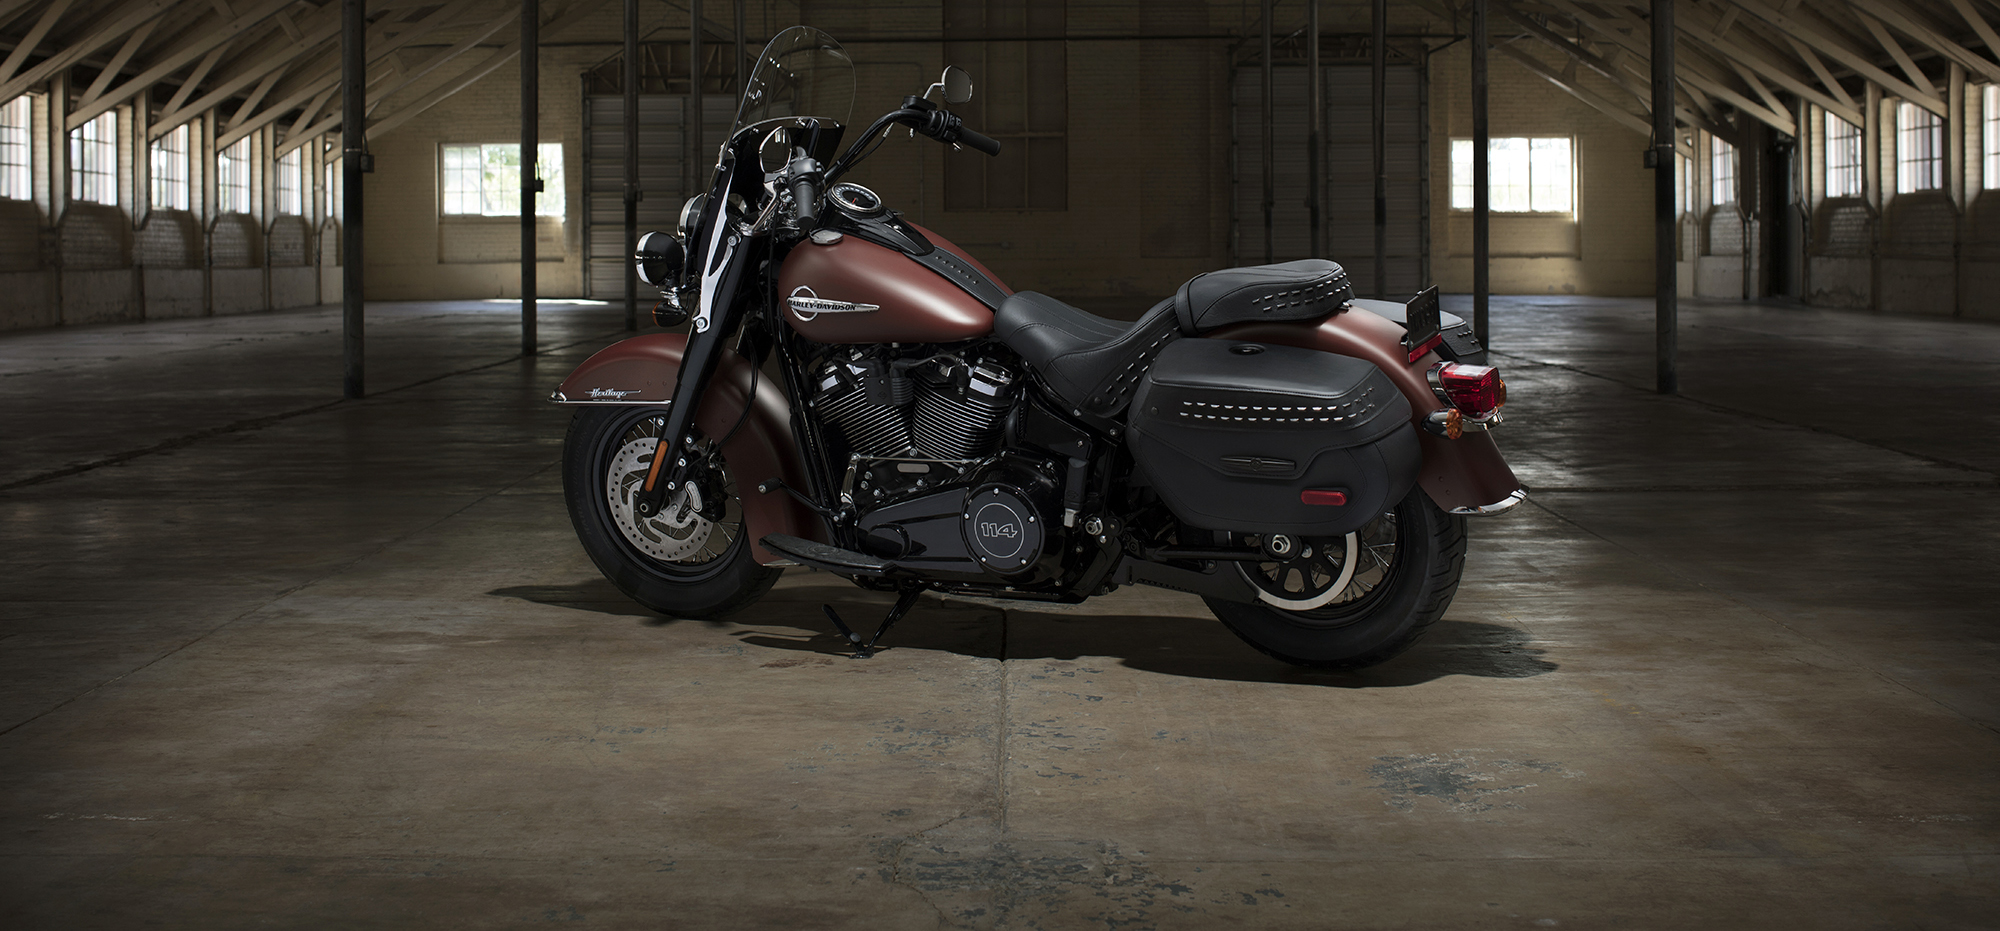 Harley-Davidson do Brasil dá dicas para conservar a motocicleta durante a quarentena